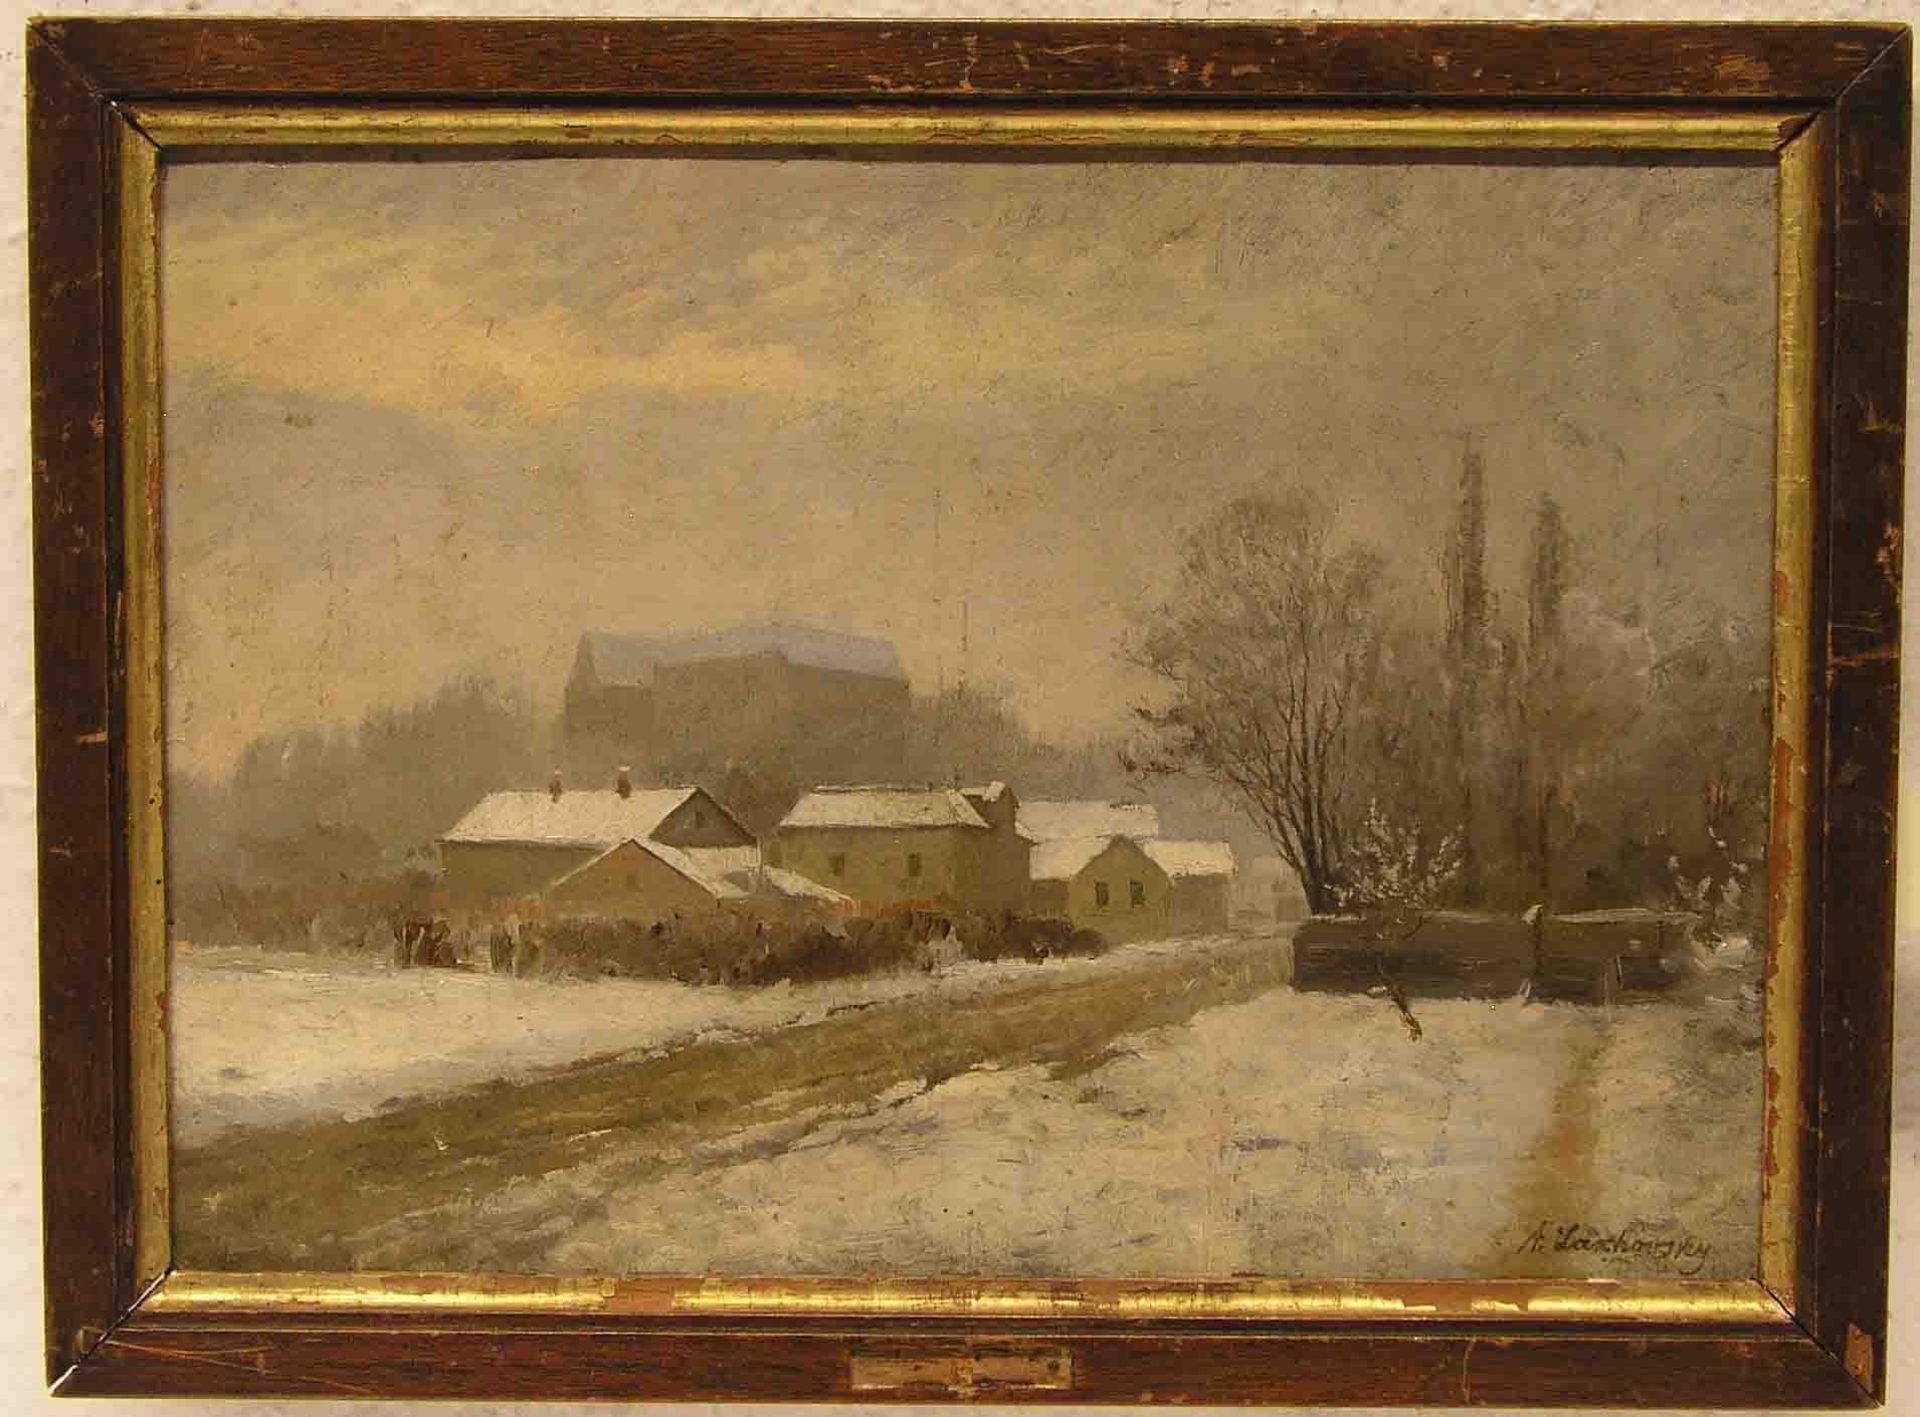 Lachovskij, Arnold Borisovich (1880 - 1937): "Stadtrand in winterlicher Landschaft".